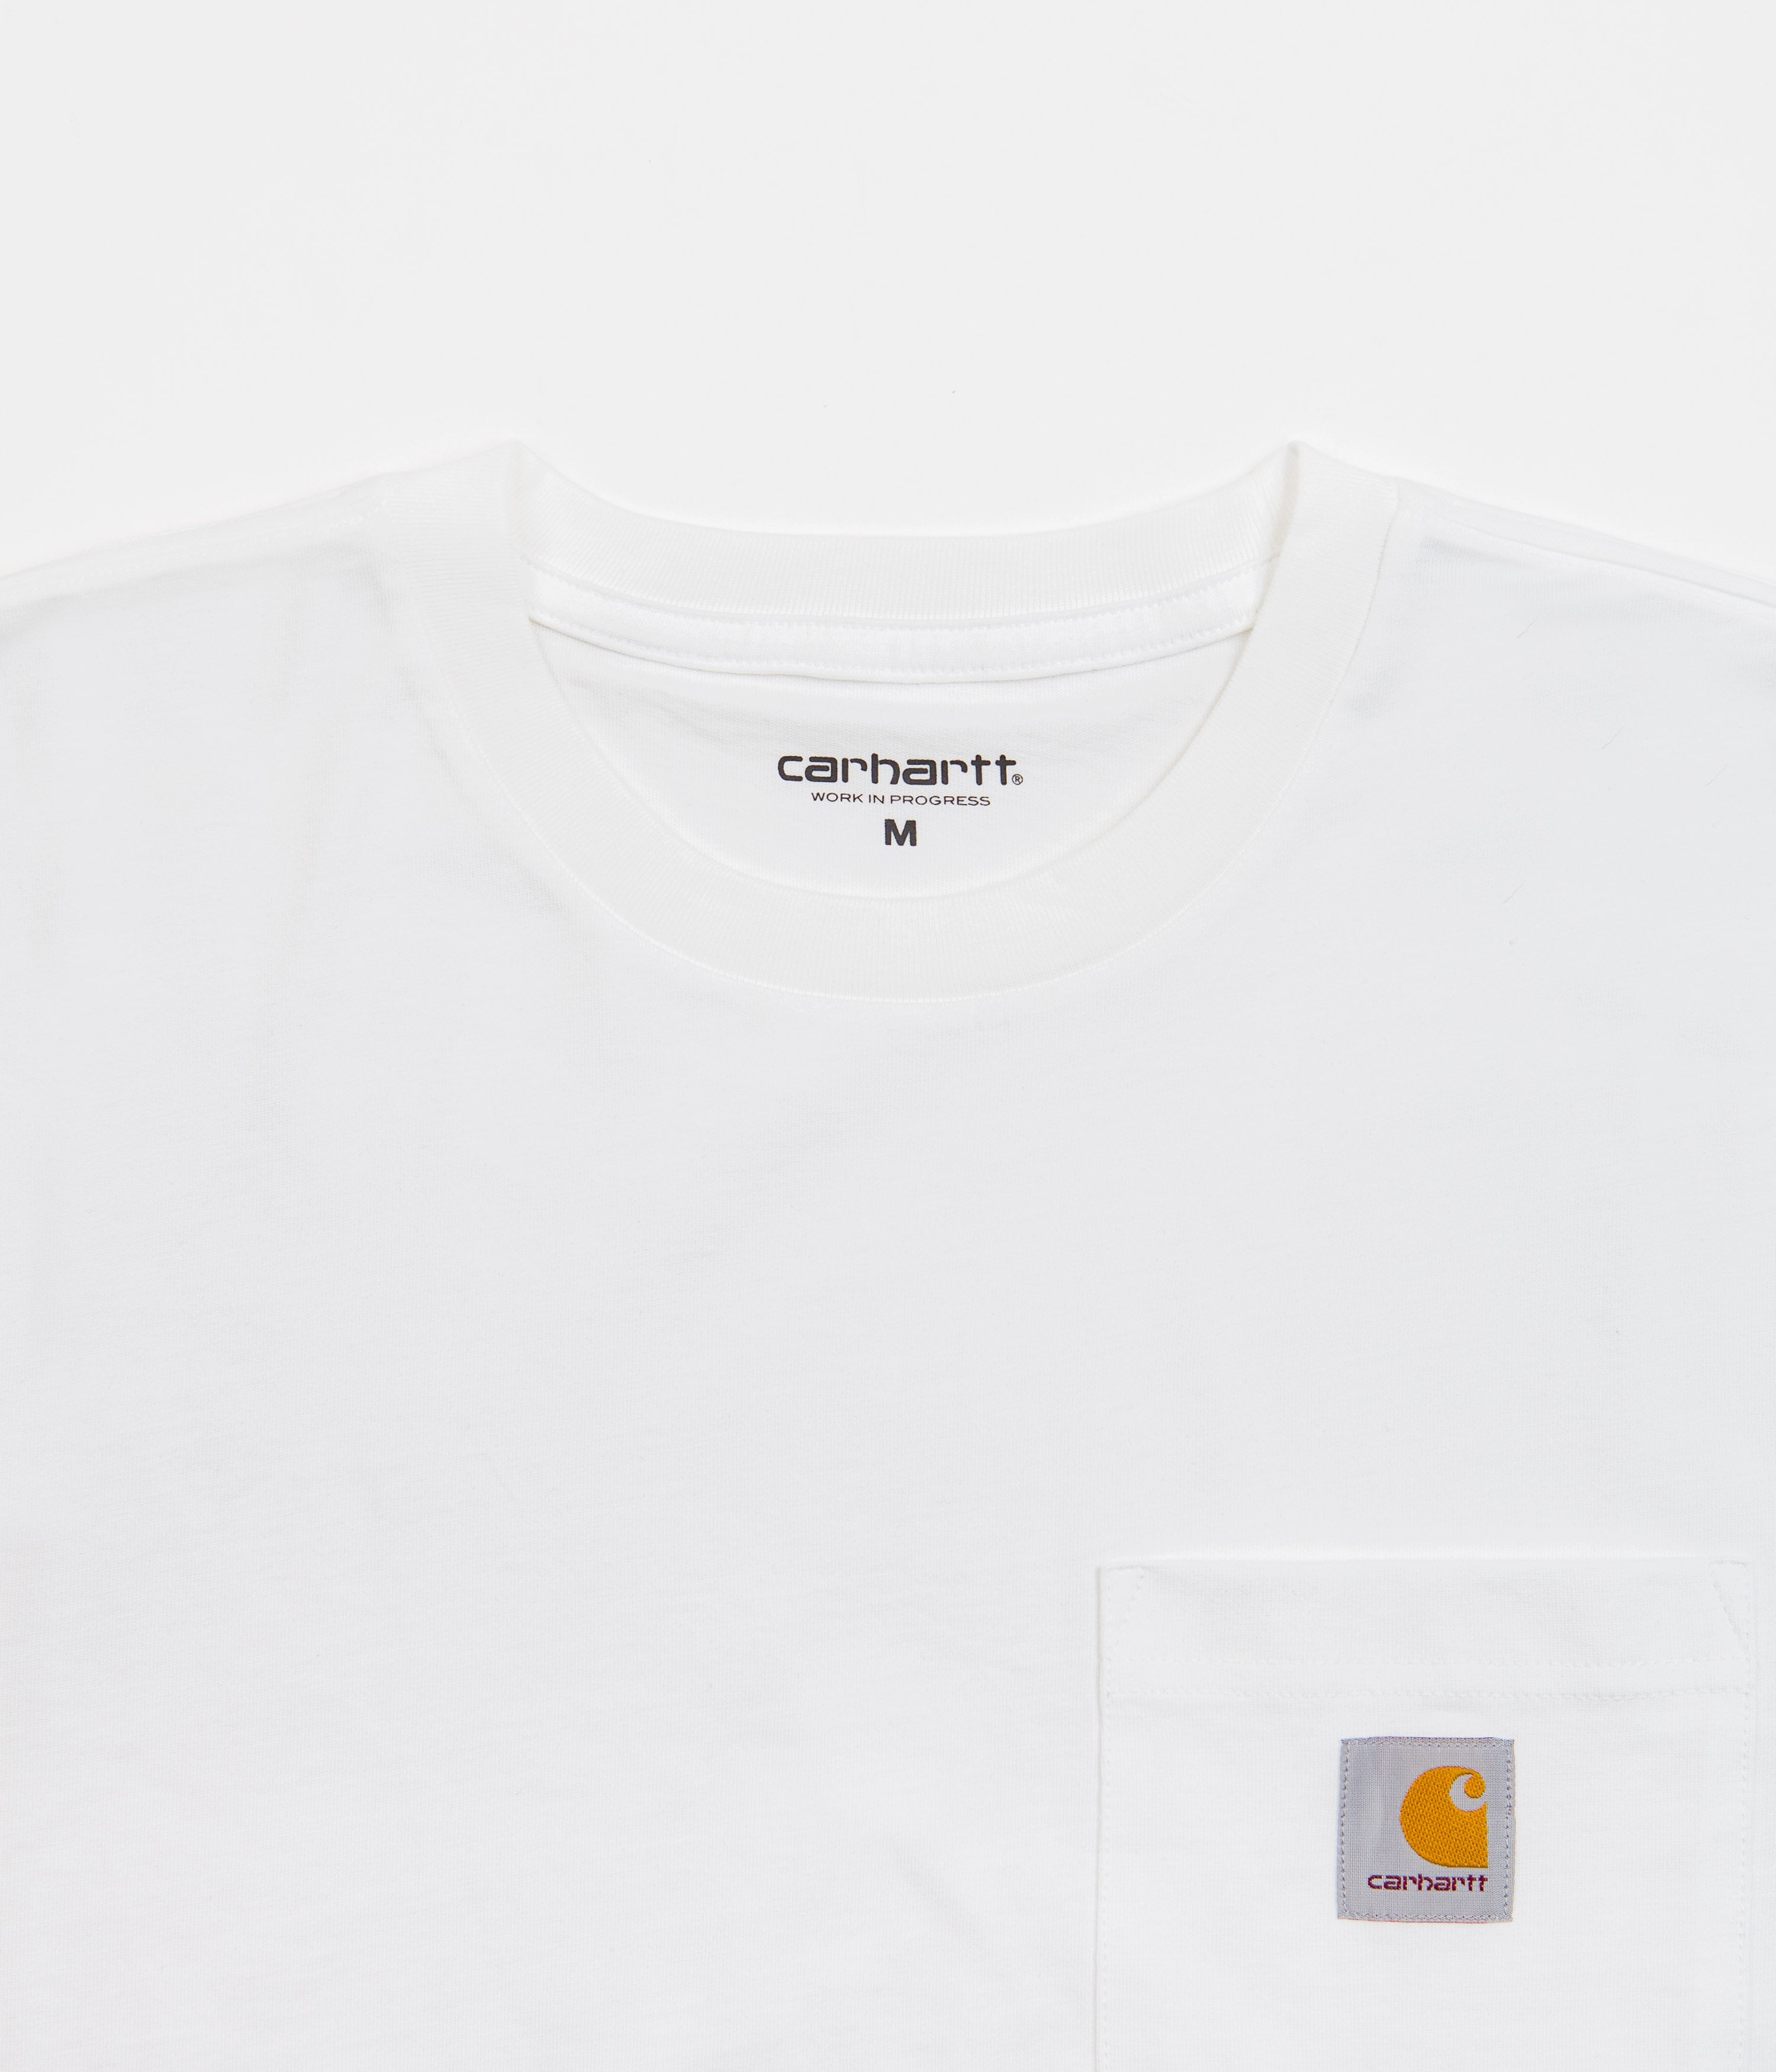 Carhartt Long Sleeve Pocket T-Shirt - White | Flatspot